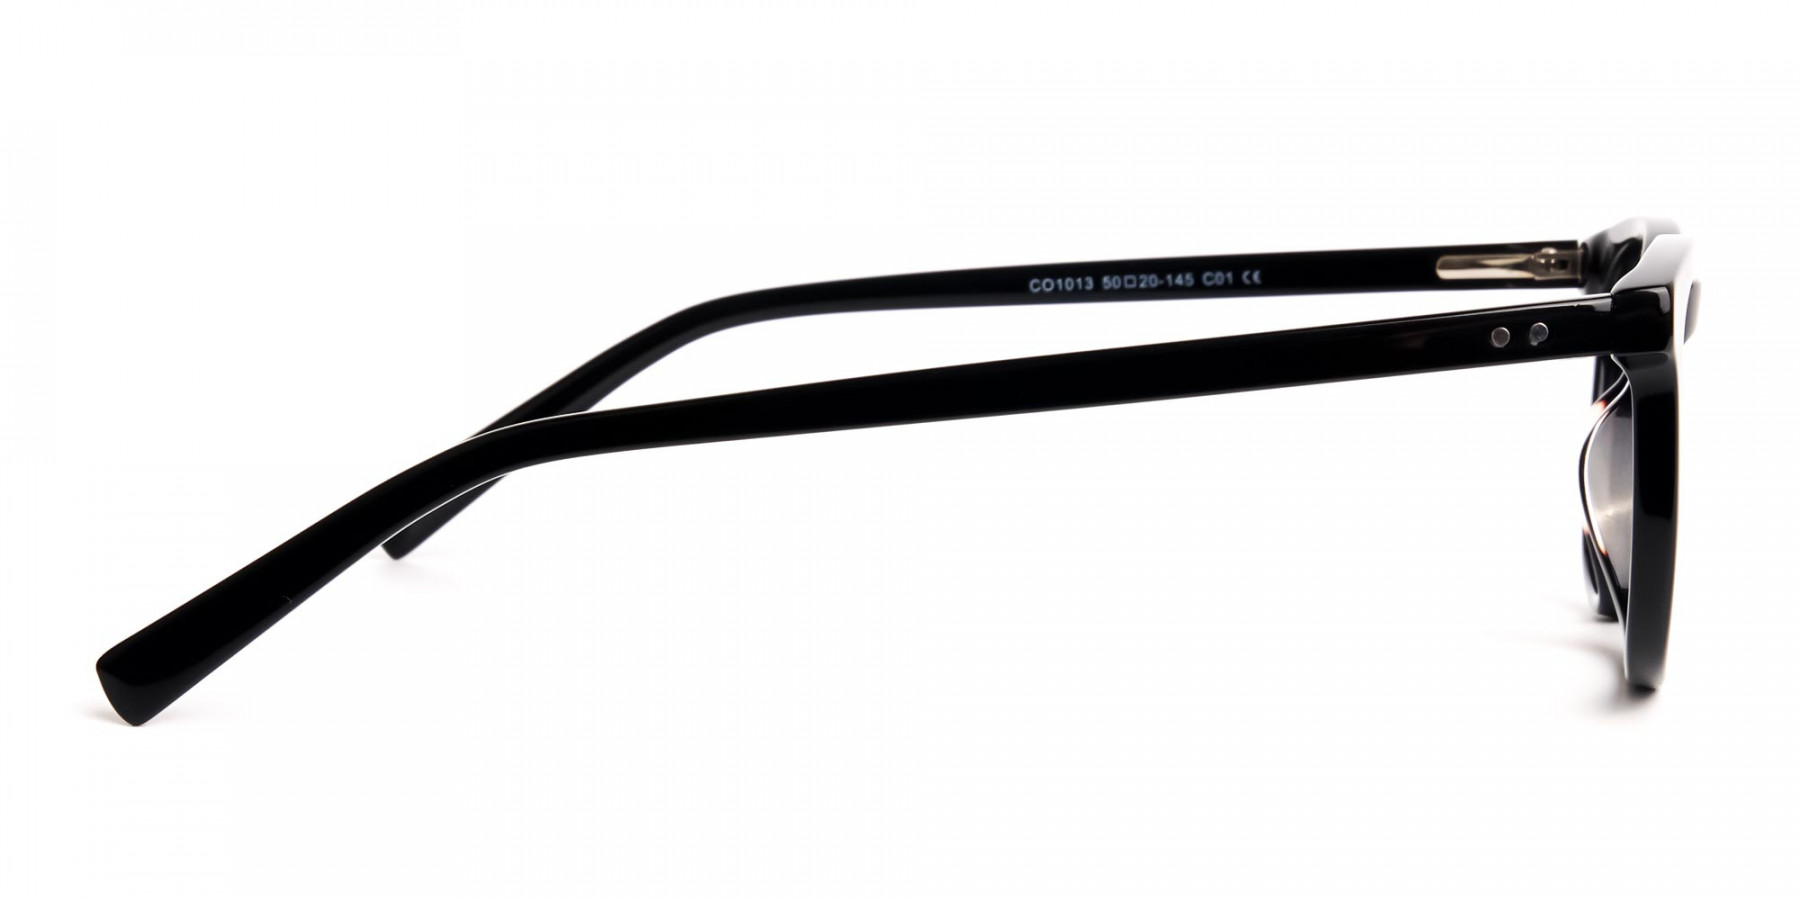 black-wayfarer-full-rim-glasses-frames-1